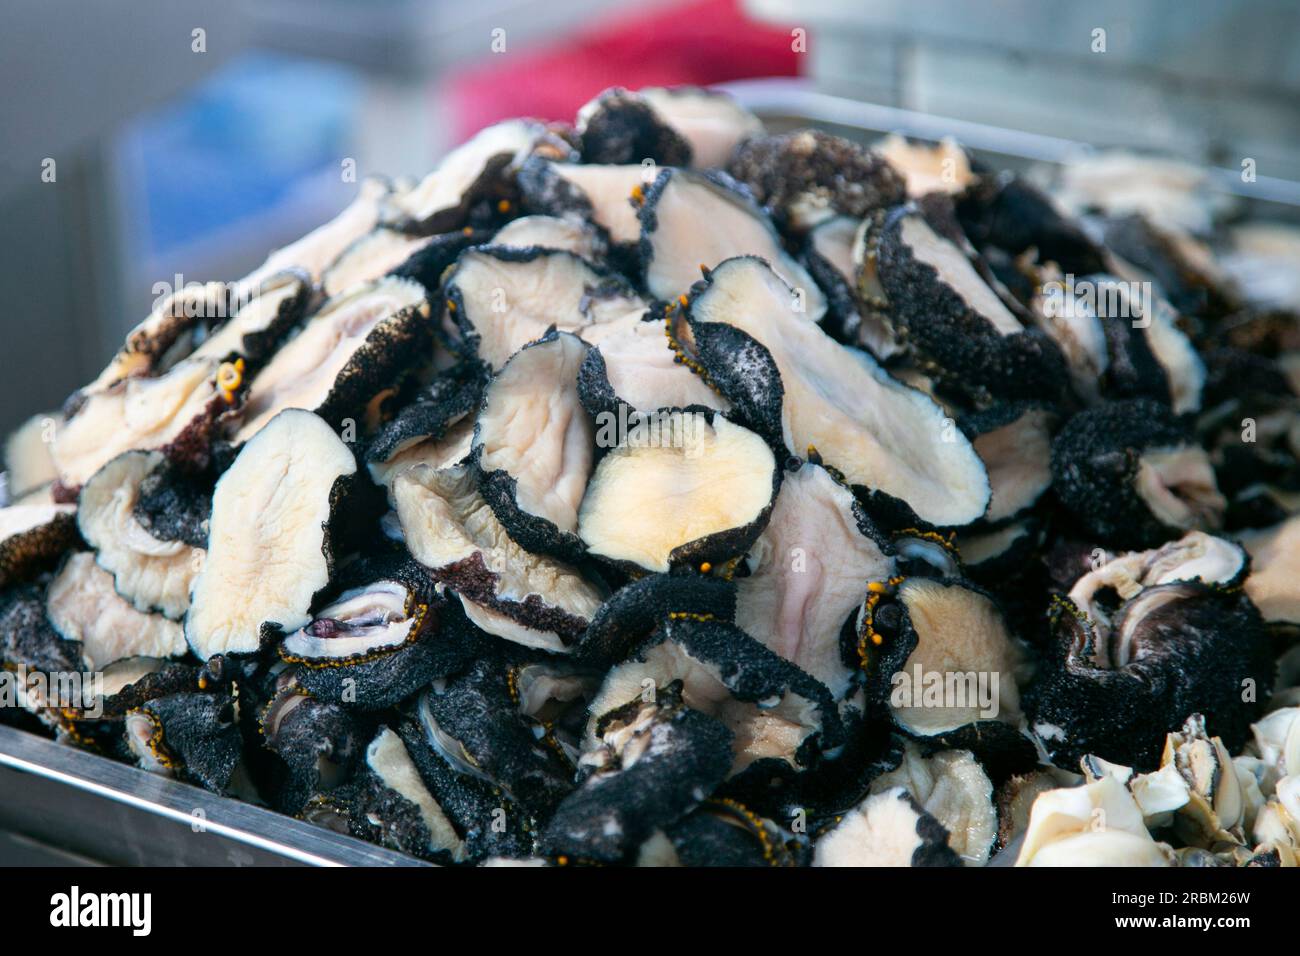 Peruanische Krebstiere und Weichtiere. Fischstände auf dem Lebensmittelmarkt Sant Camilo in Arequipa, Peru. Stockfoto